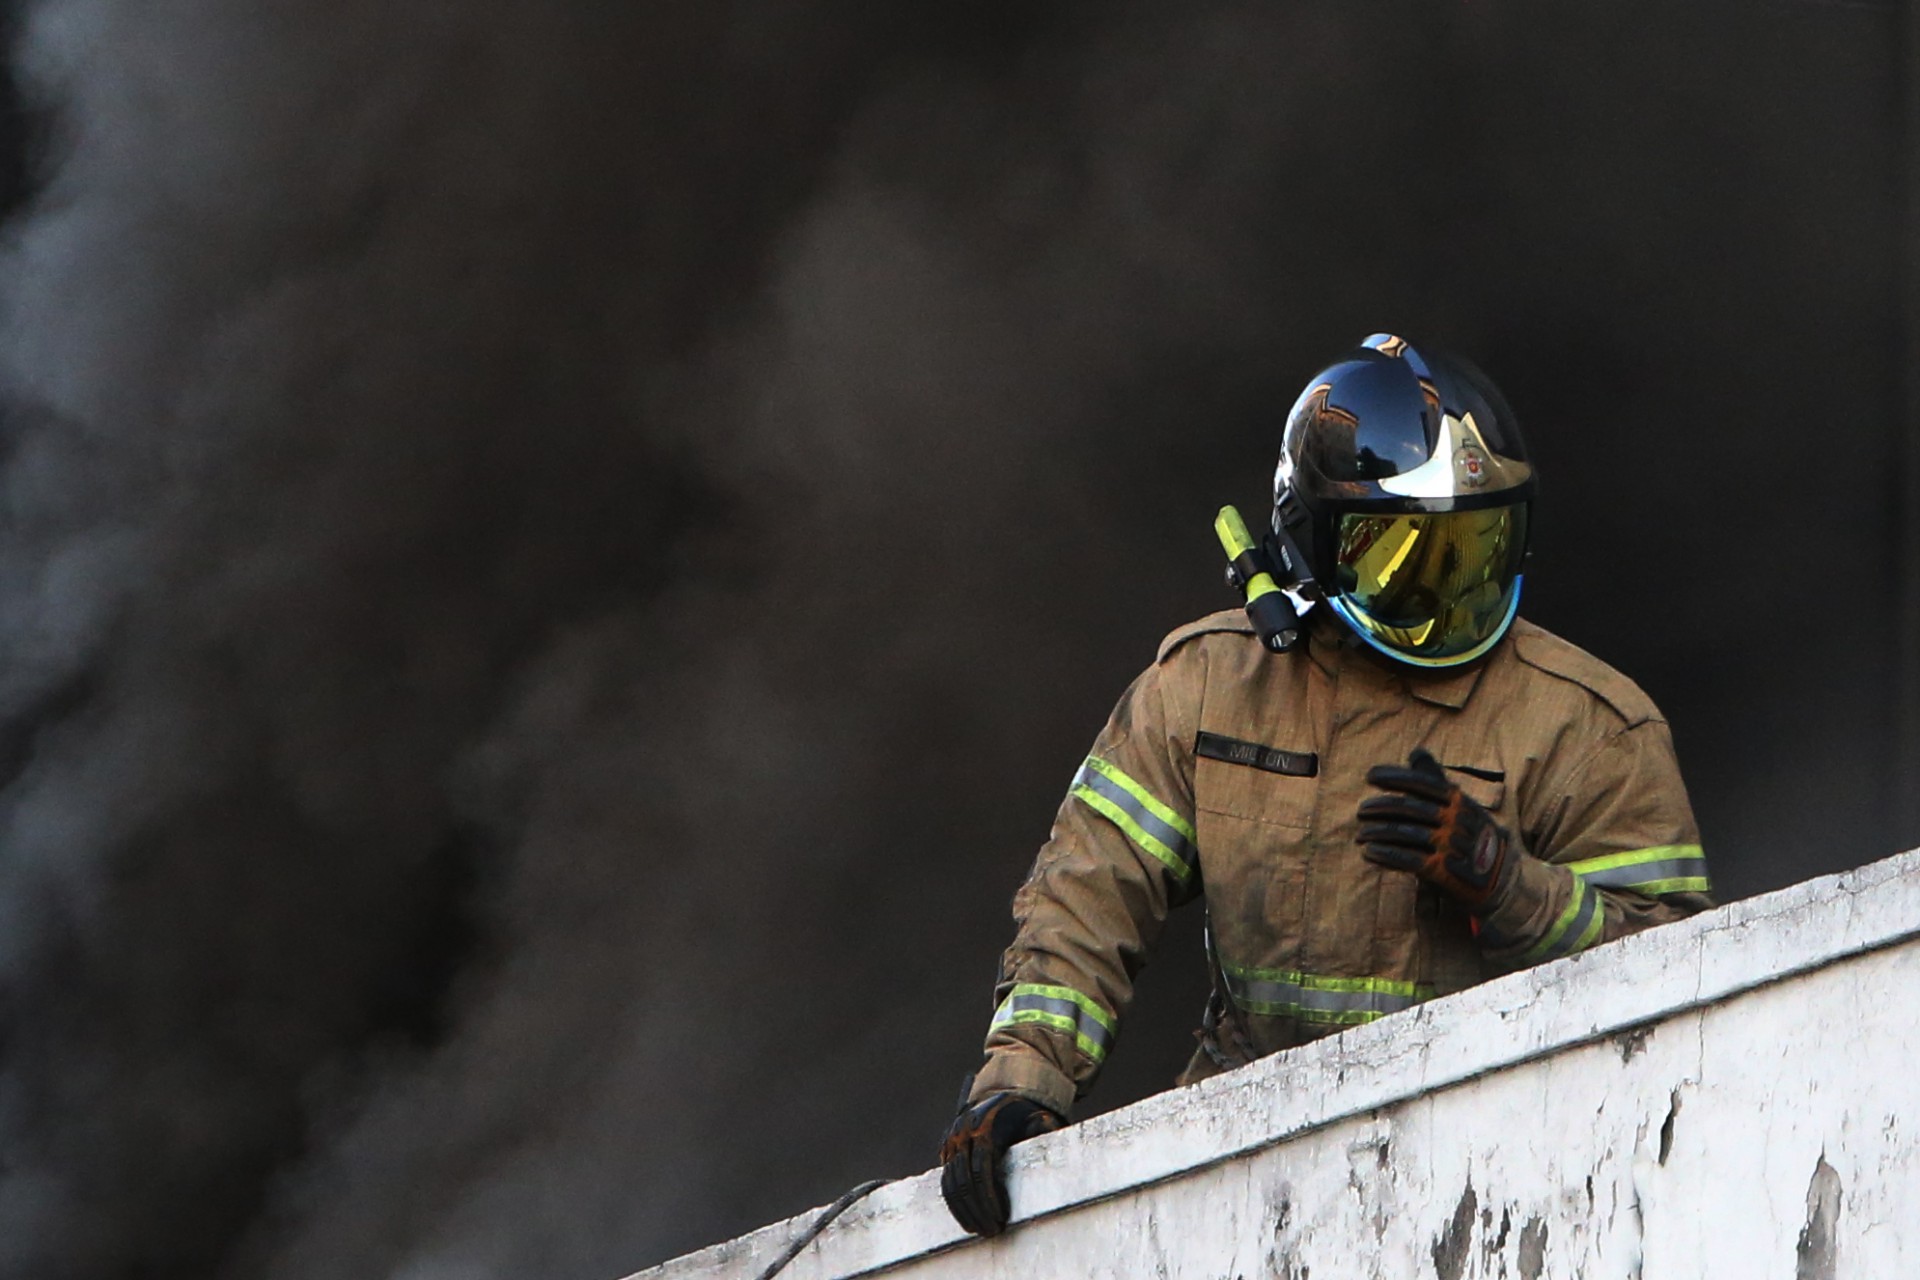 Incendio no Hospital Federal de Bonsucesso. Bombeiros cerrando o teto do local.  - Daniel Castelo Branco / Agência O Dia